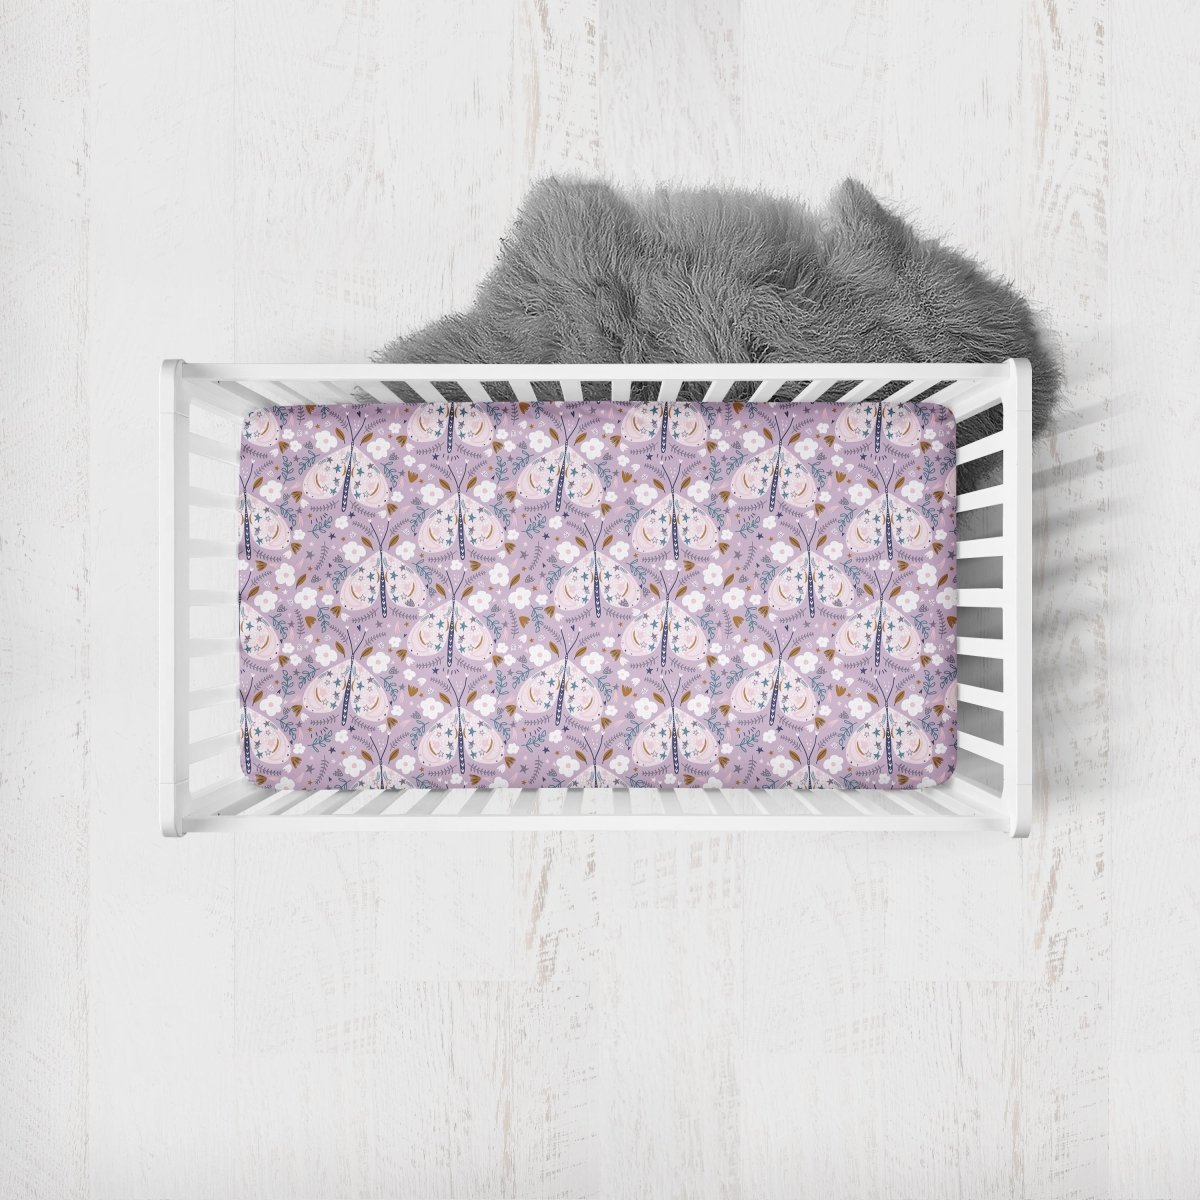 Purple Butterfly Crib Sheet - gender_girl, Theme_Butterfly,